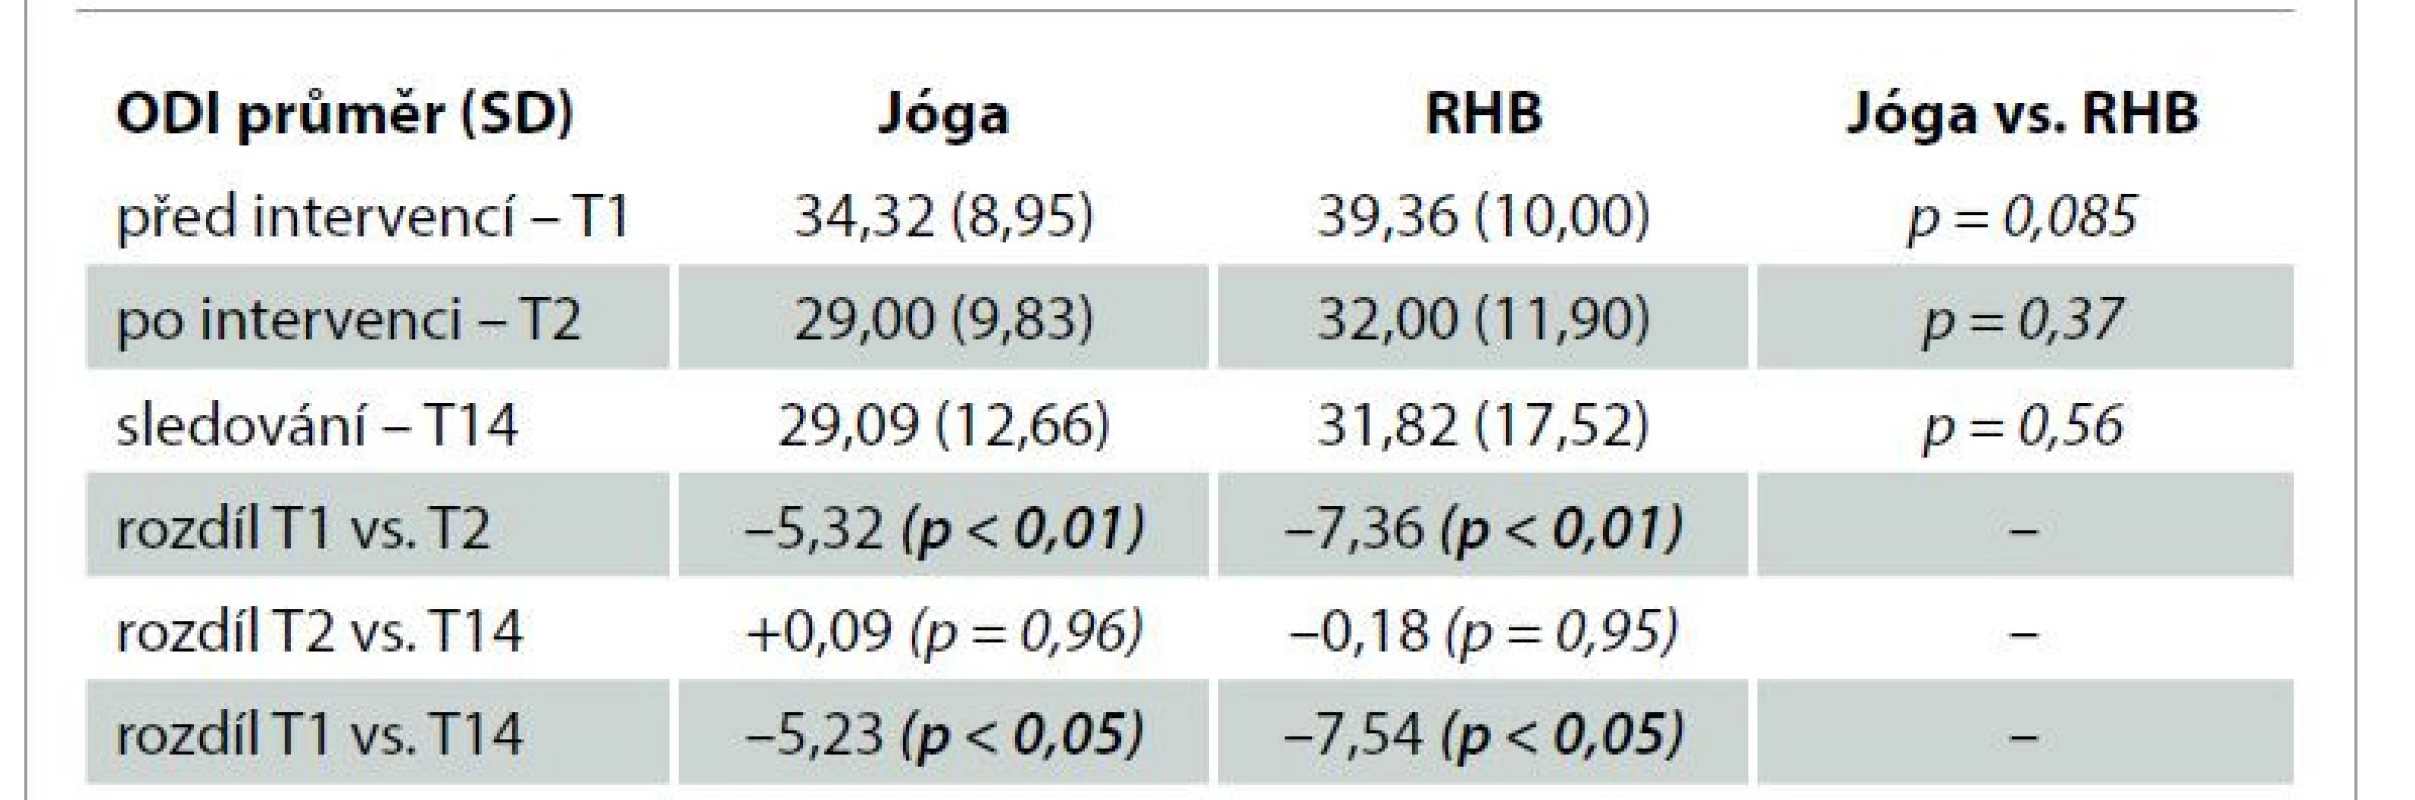 Vývoj hodnot ODI v čase a porovnání mezi skupinami Jóga a RHB.<br>
Tab. 3. Changes of the ODI score in time and differences between the Yoga and
Rehabilitation groups.